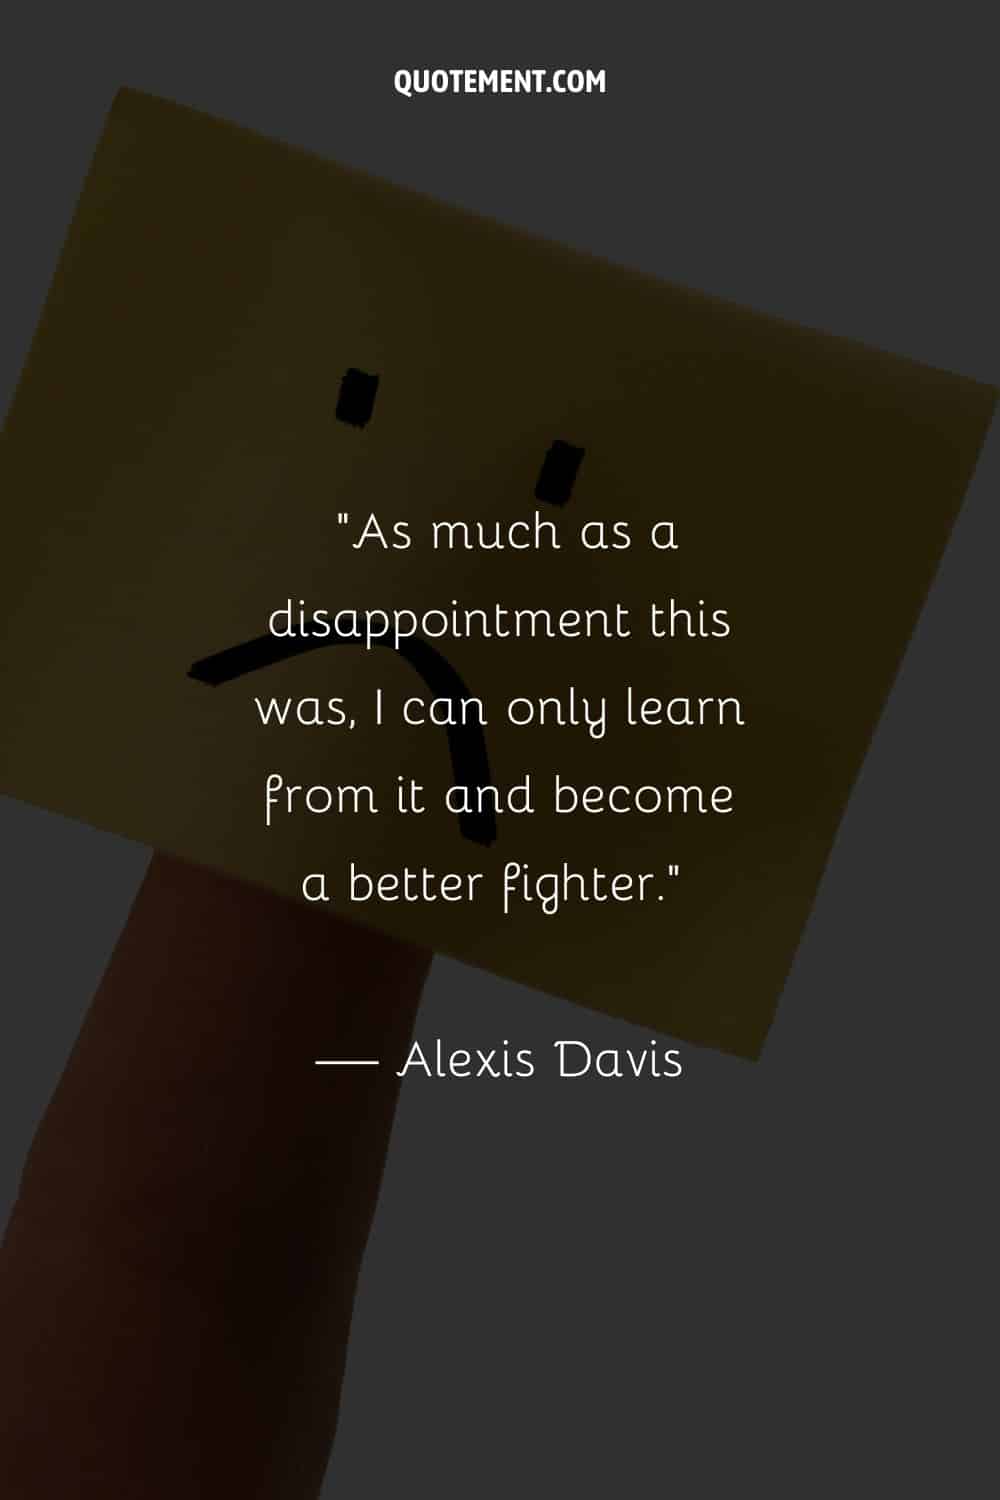 Por muy decepcionante que haya sido, sólo puedo aprender de ello y convertirme en un mejor luchador.